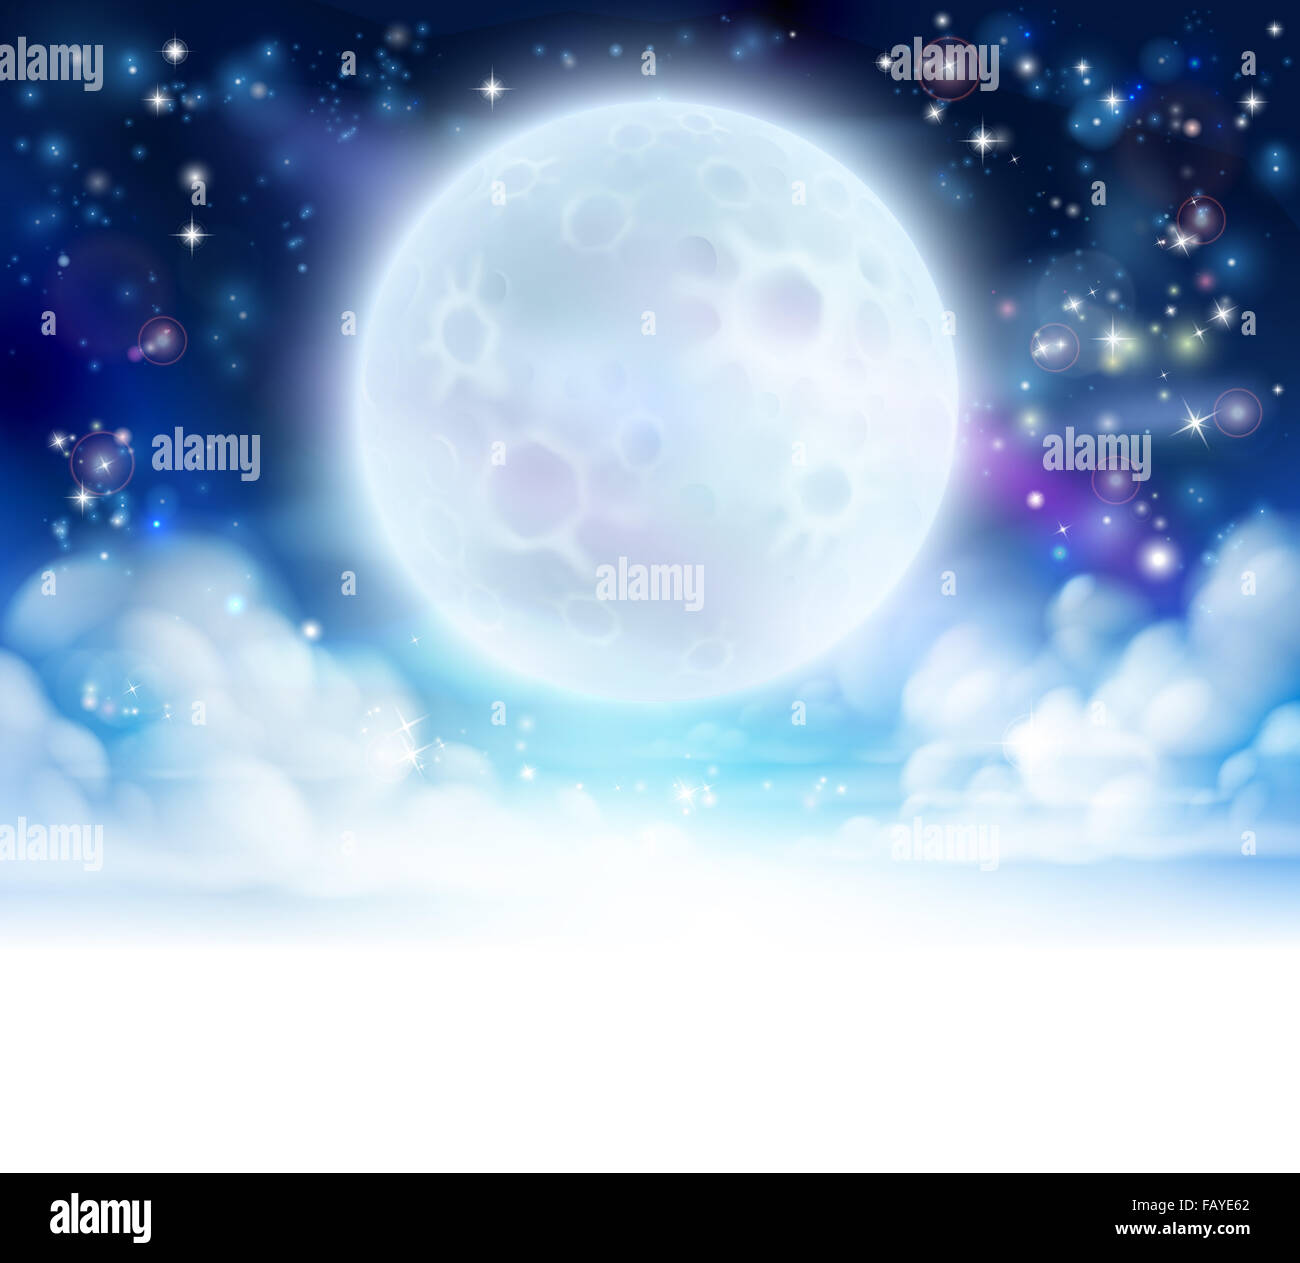 Mond Nacht Himmelshintergrund mit Wolken und Sternen. Überblendungen in weiß auf der Unterseite für die einfache Nutzung als Bordürenmuster oder Header. Stockfoto